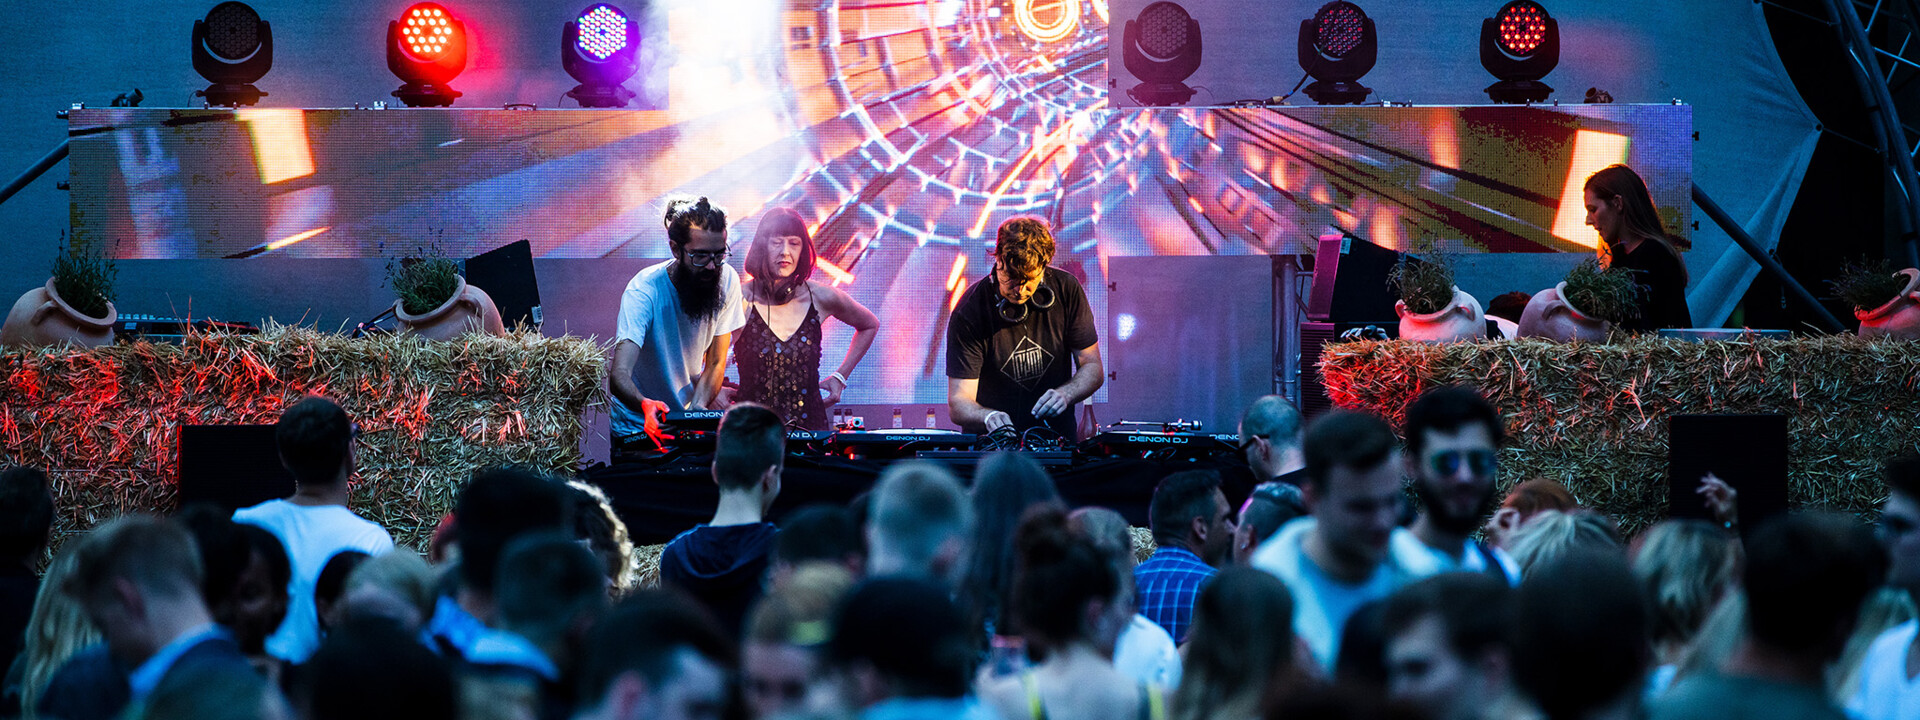 DJs legen vor Zuschauern bei Electronic Wine auf ©Koblenz-Touristik GmbH / Kai Myller